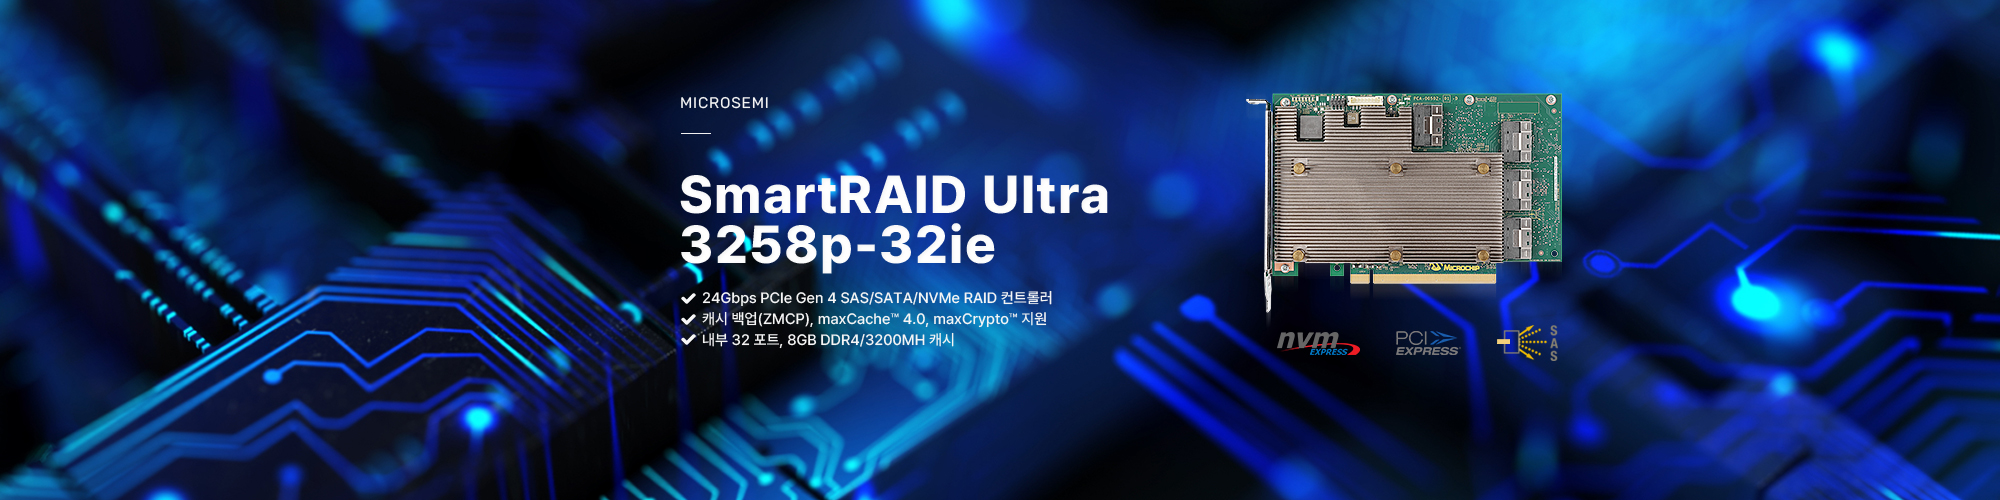 마이크로세미 아답텍 내장 32 포트24Gbps PCIe Gen4 SmartRAID 컨트롤러, SmartRAID Ultra 3258p-32ie 제품보러가기